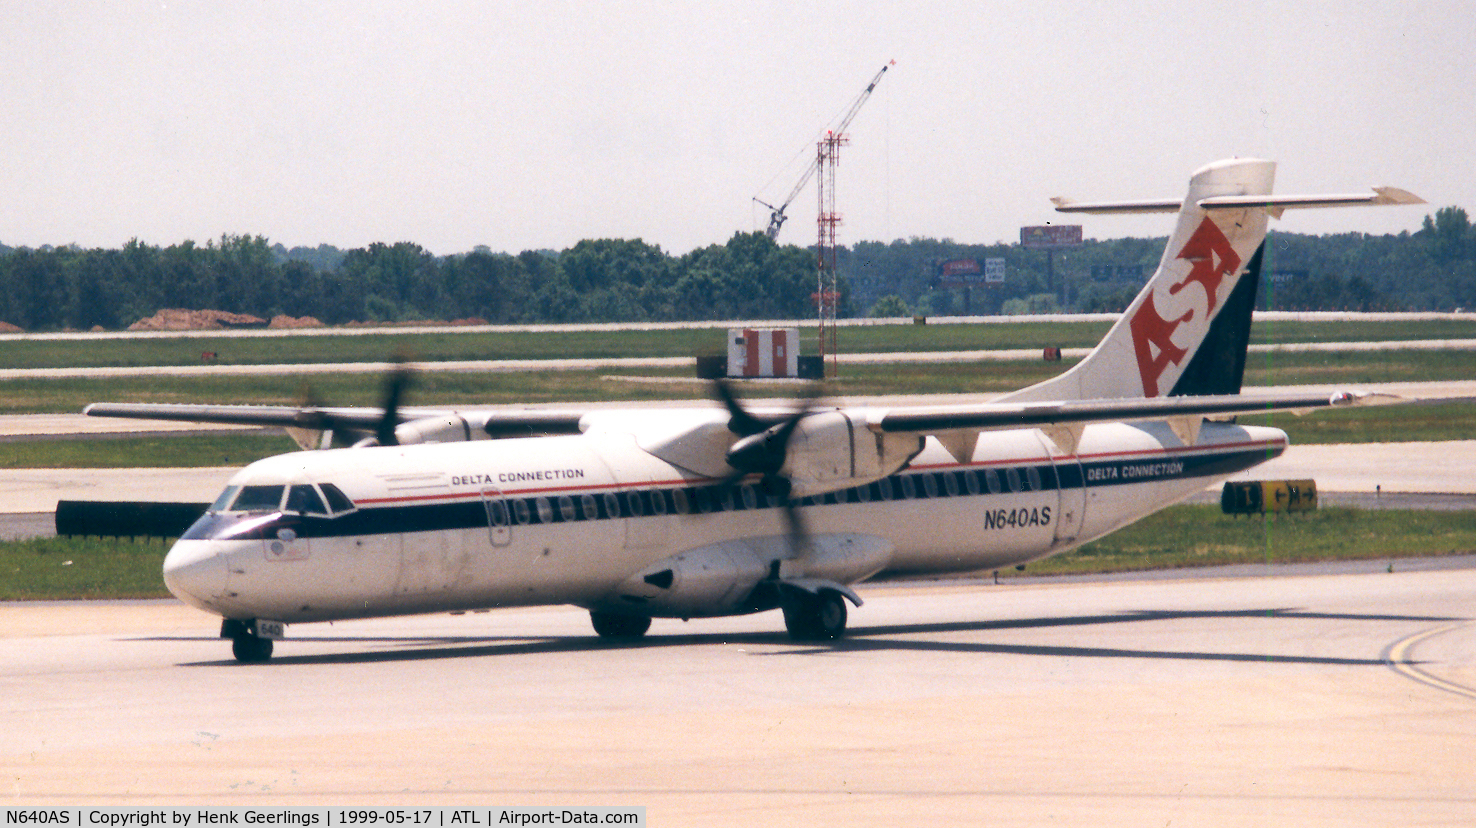 N640AS, 1994 ATR 72-212 C/N 405, ASA Delta Connection